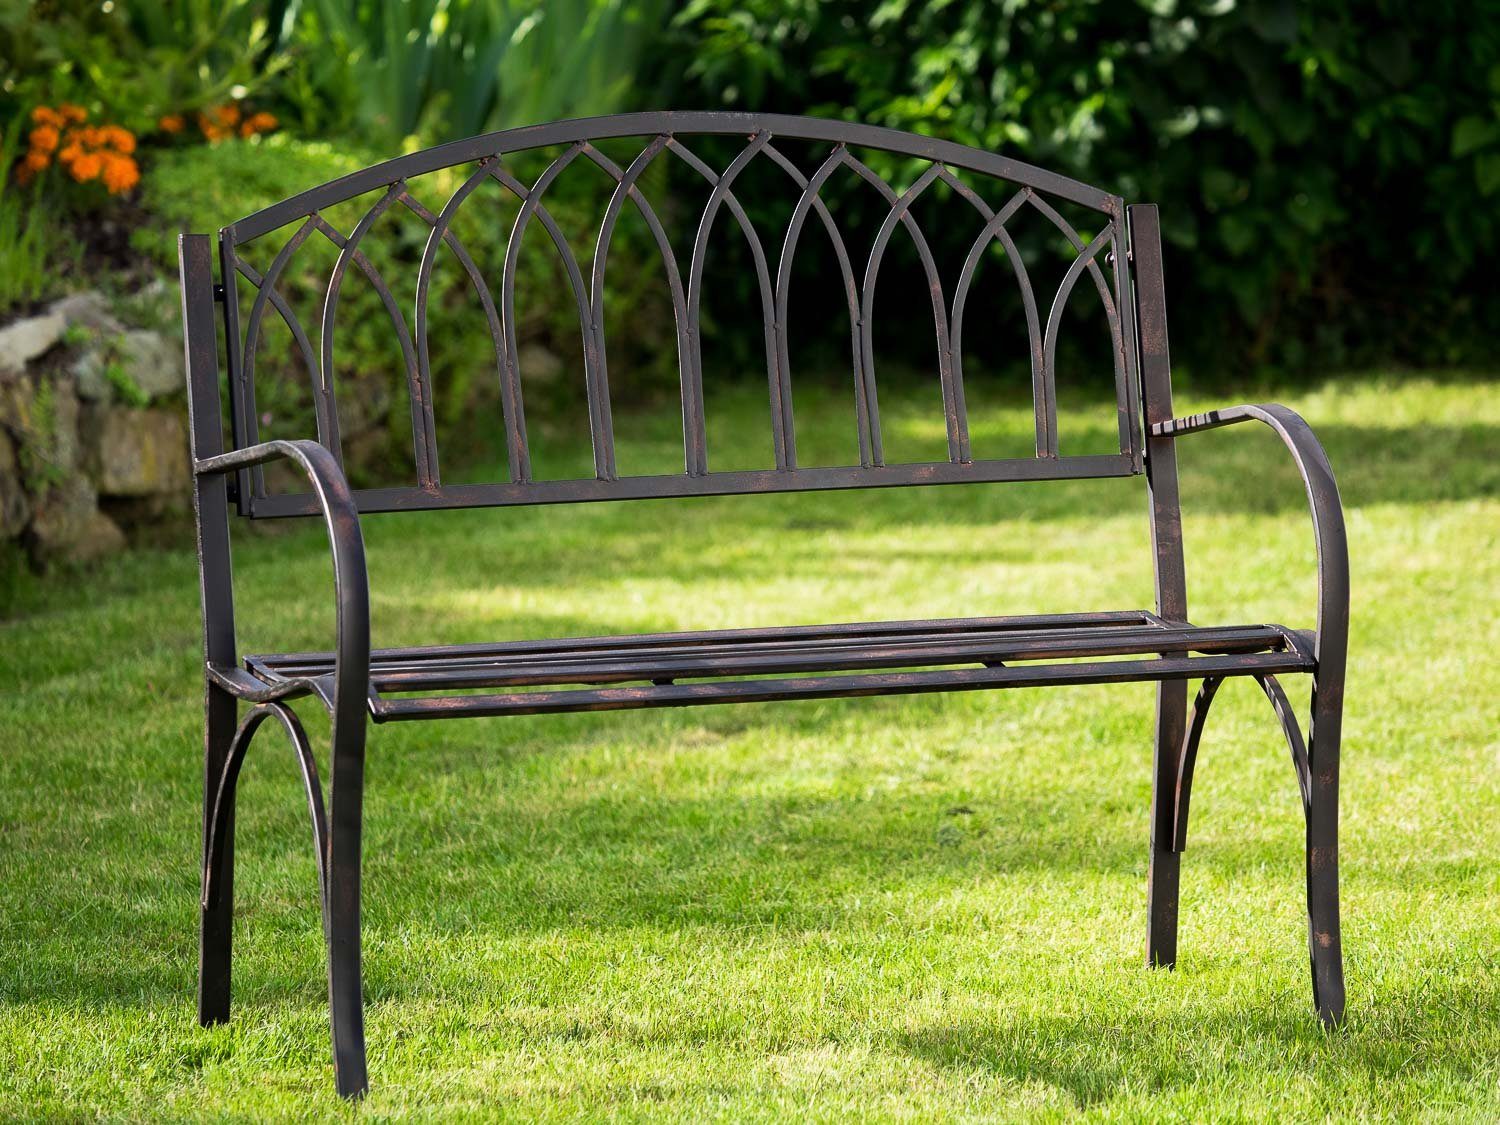 Aubaho Gartenbank »Nostalgie Gartenbank Metall Eisen Antik-Stil braun  Gartenmöbel Garten Park Bank« online kaufen | OTTO